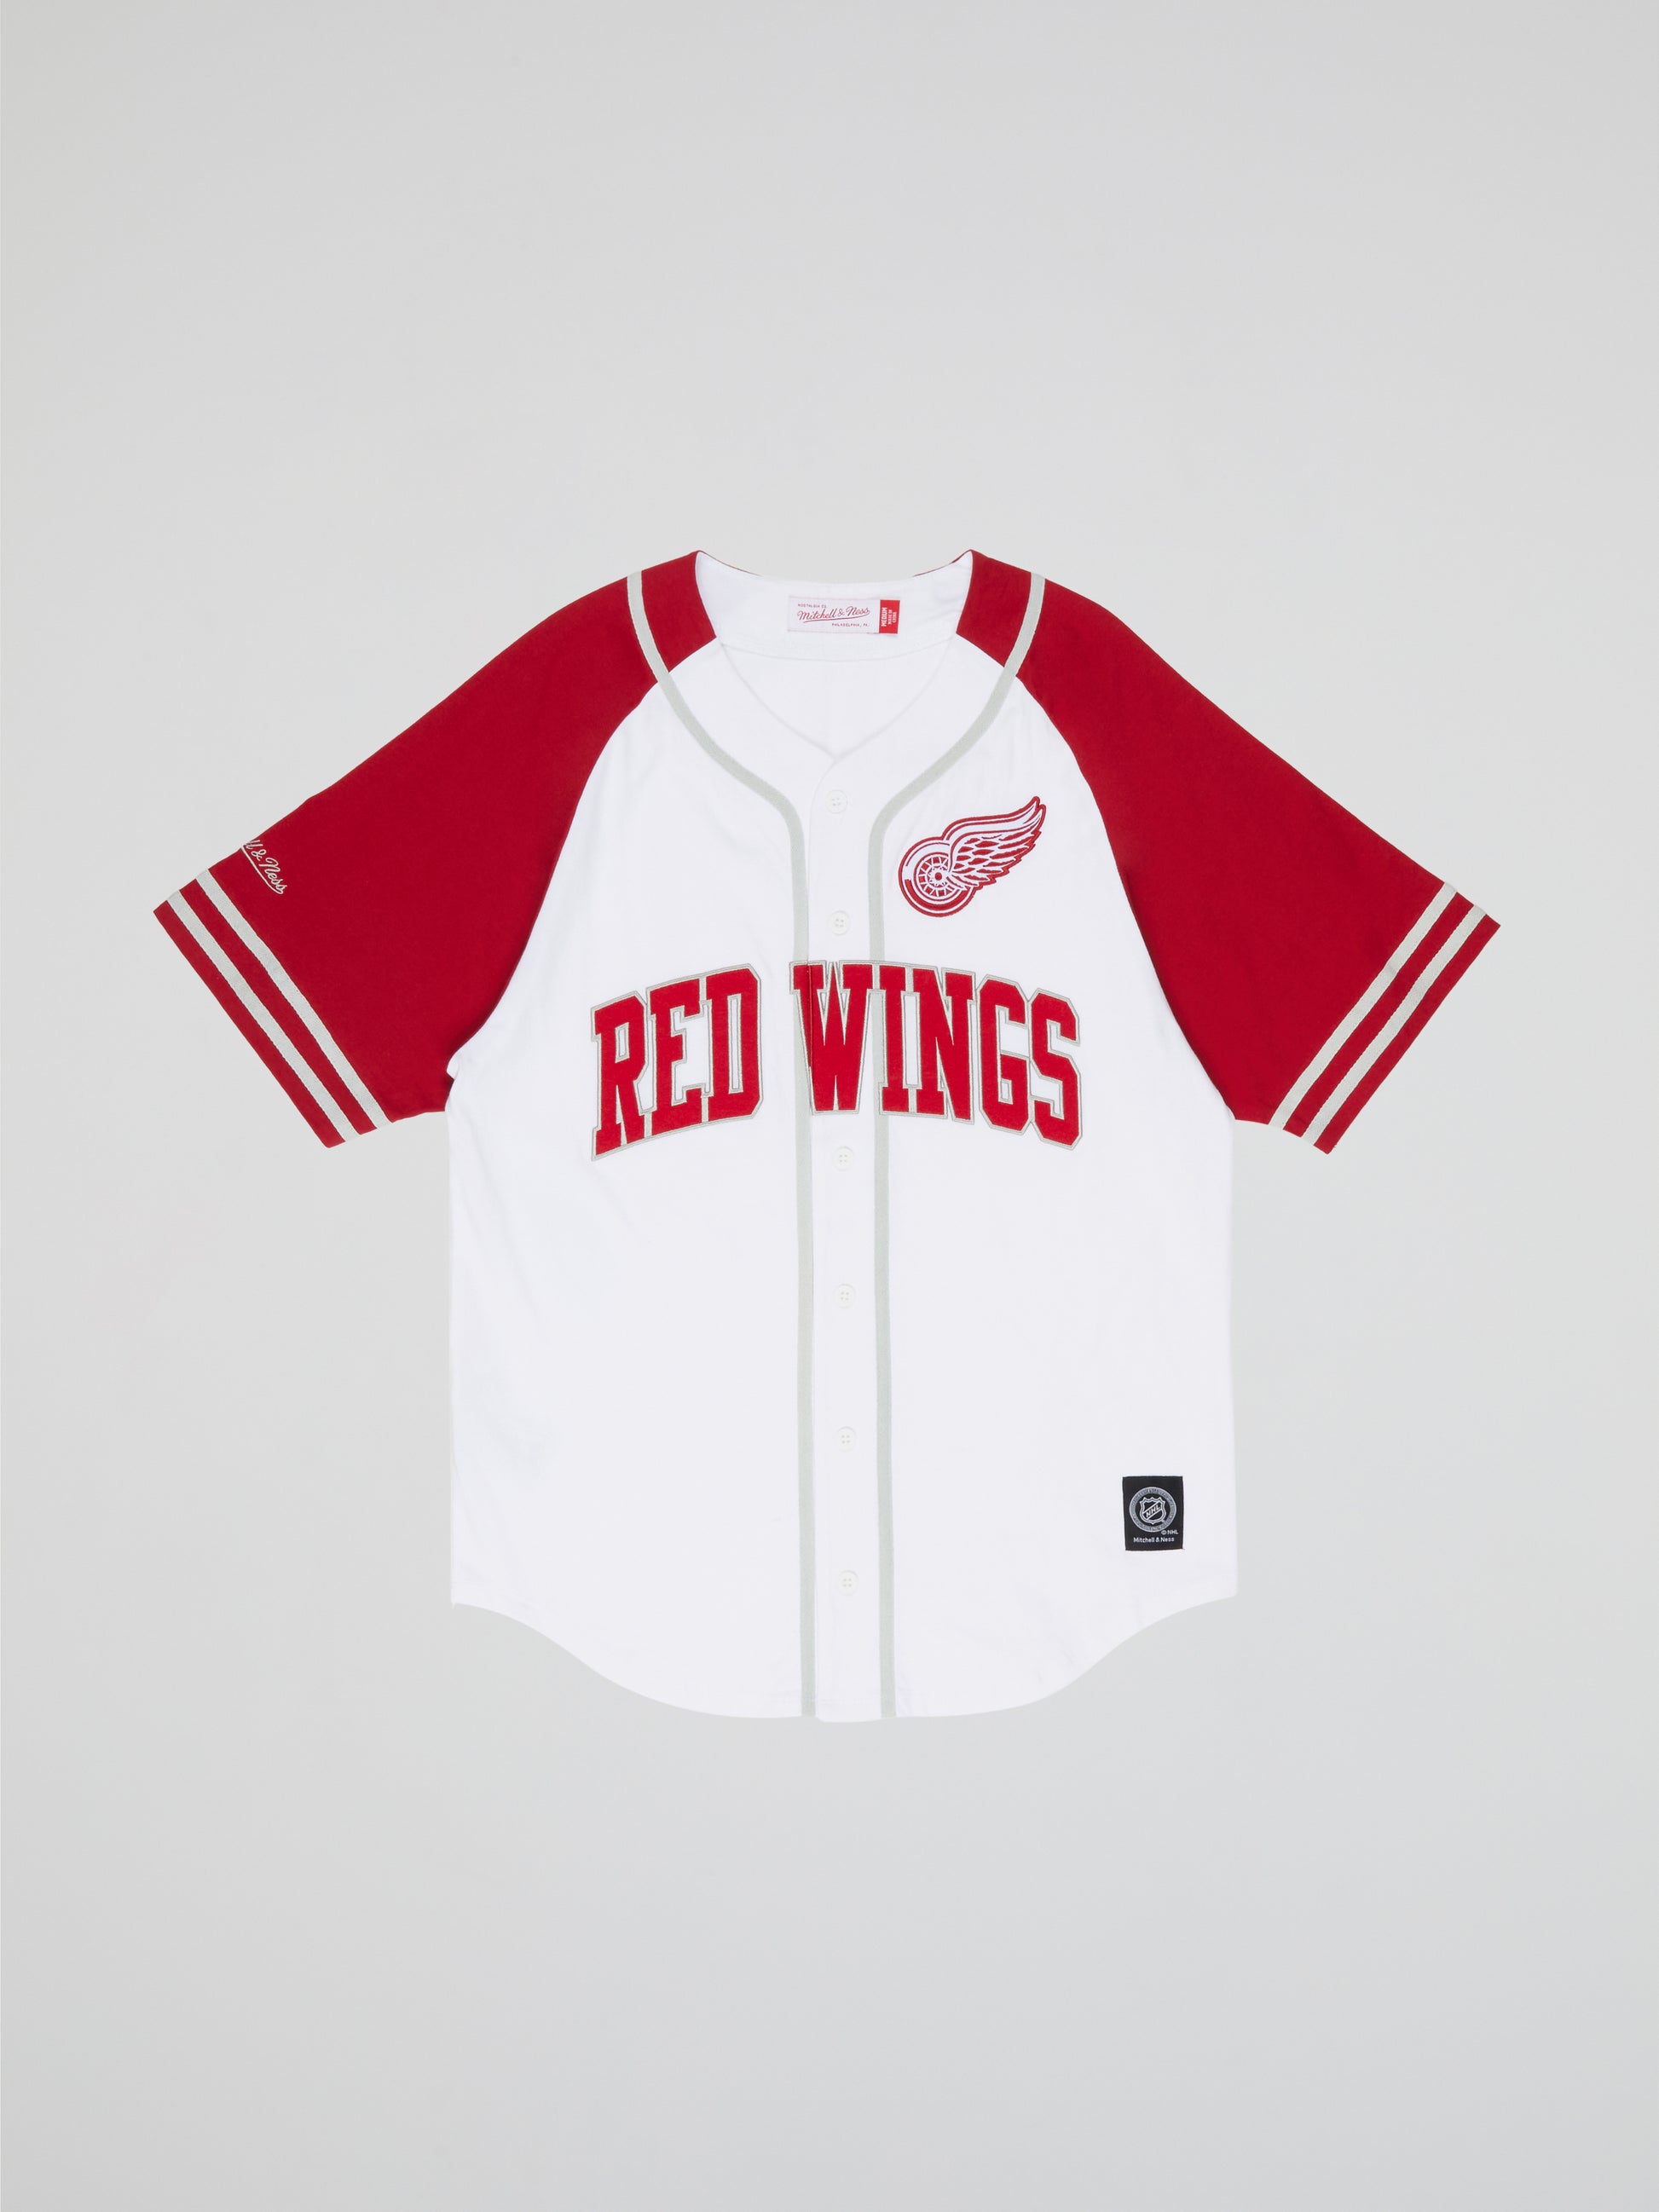 Detroit Red Wings Gear, Red Wings Jerseys, Detroit Red Wings Apparel